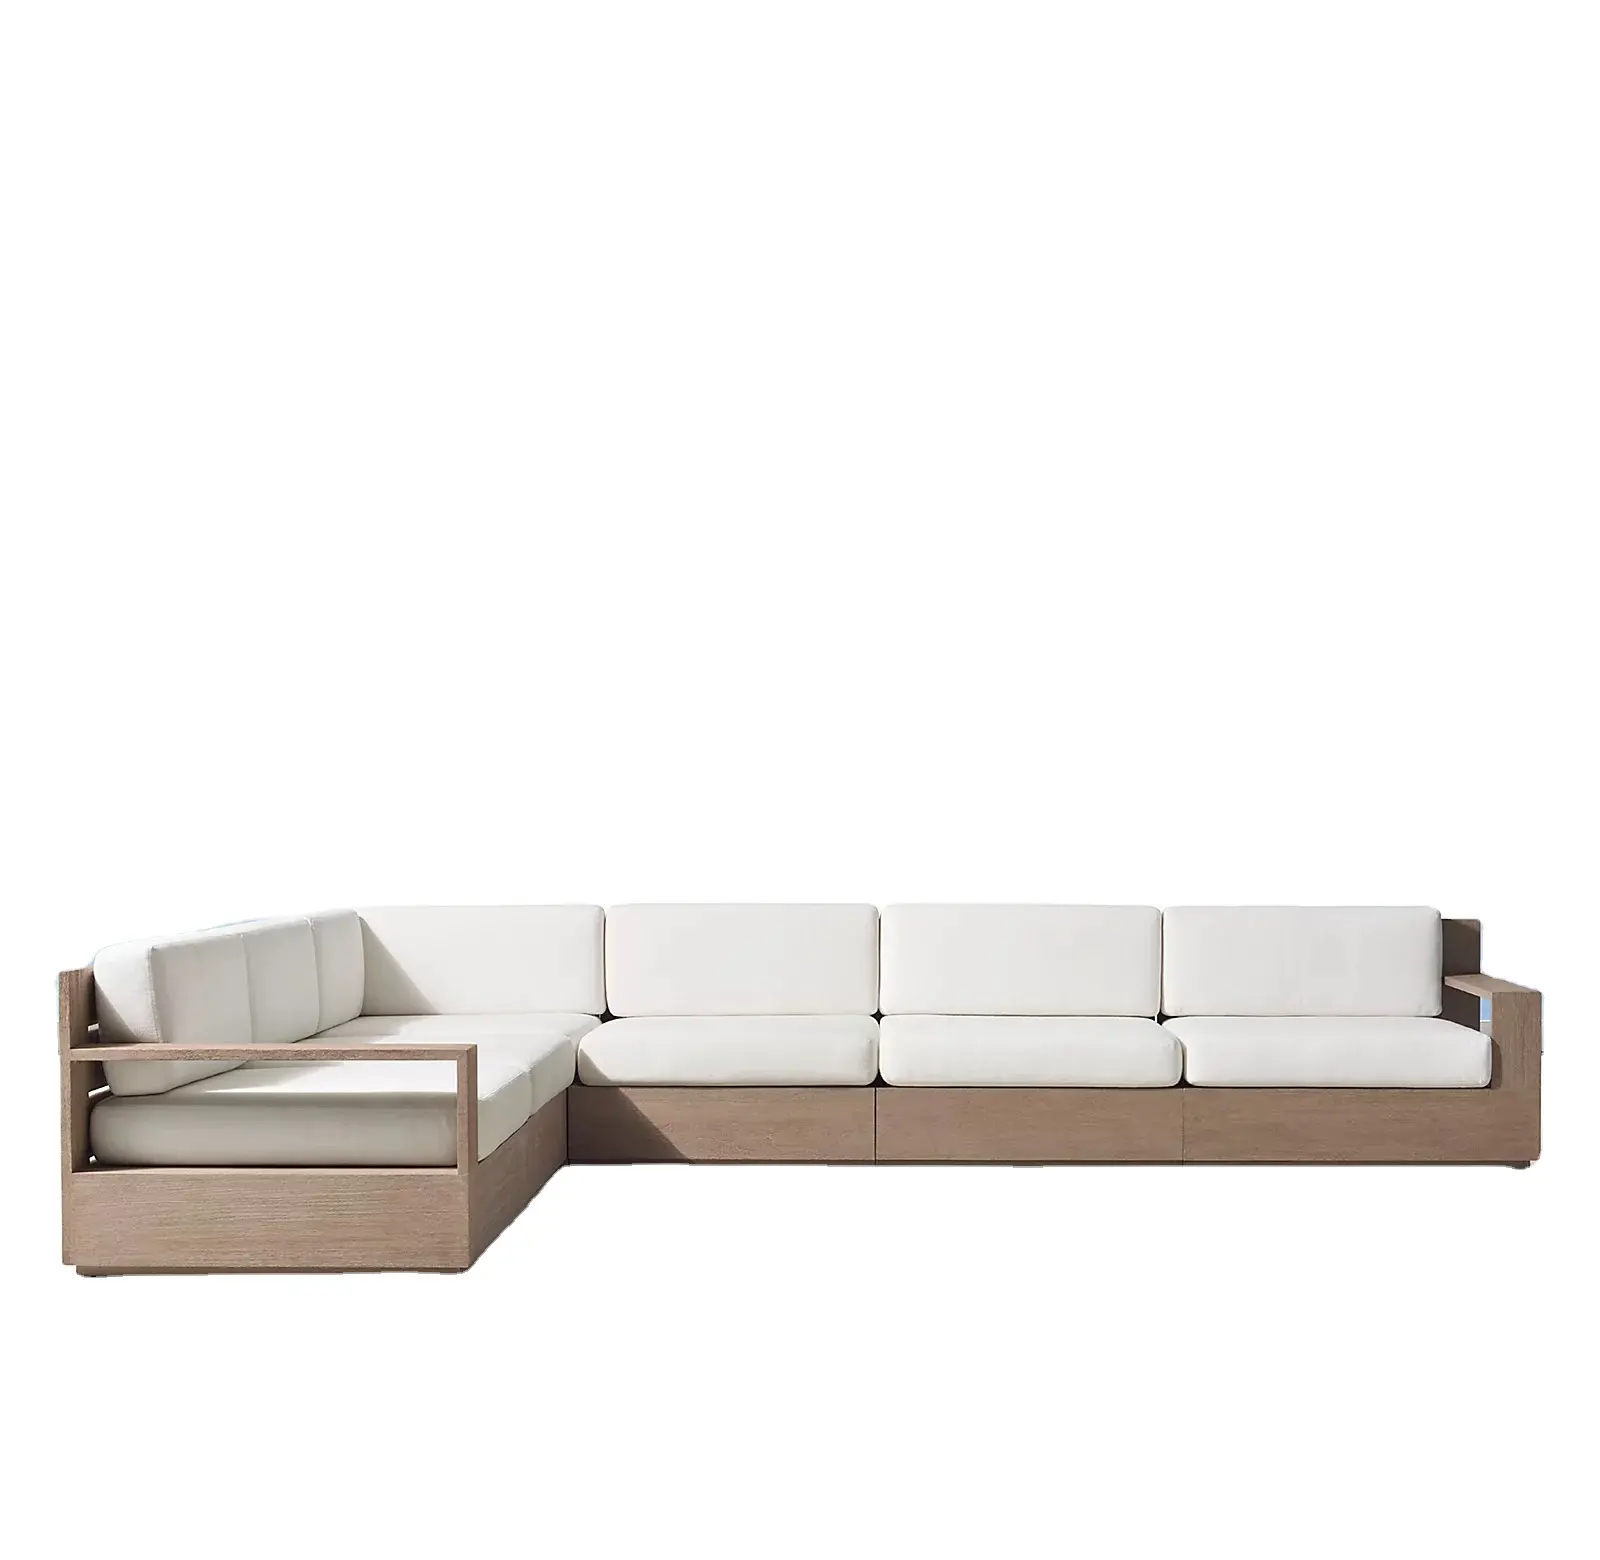 Luxo móveis de madeira teca mobiliário de jardim ao ar livre móveis seccional conjunto de sofá de madeira de teca madeira maciça de assento profundo